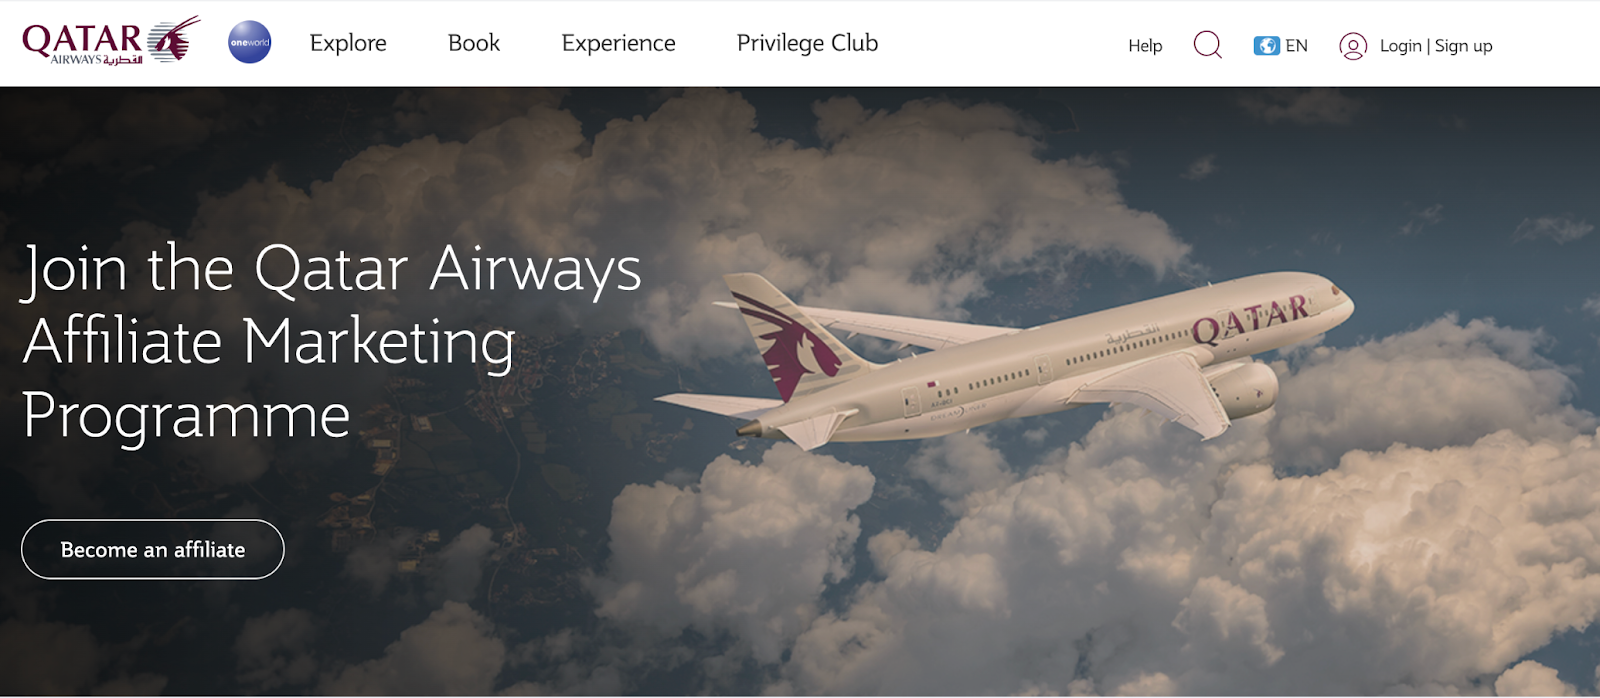 Qatar Airways affiliate program landing page